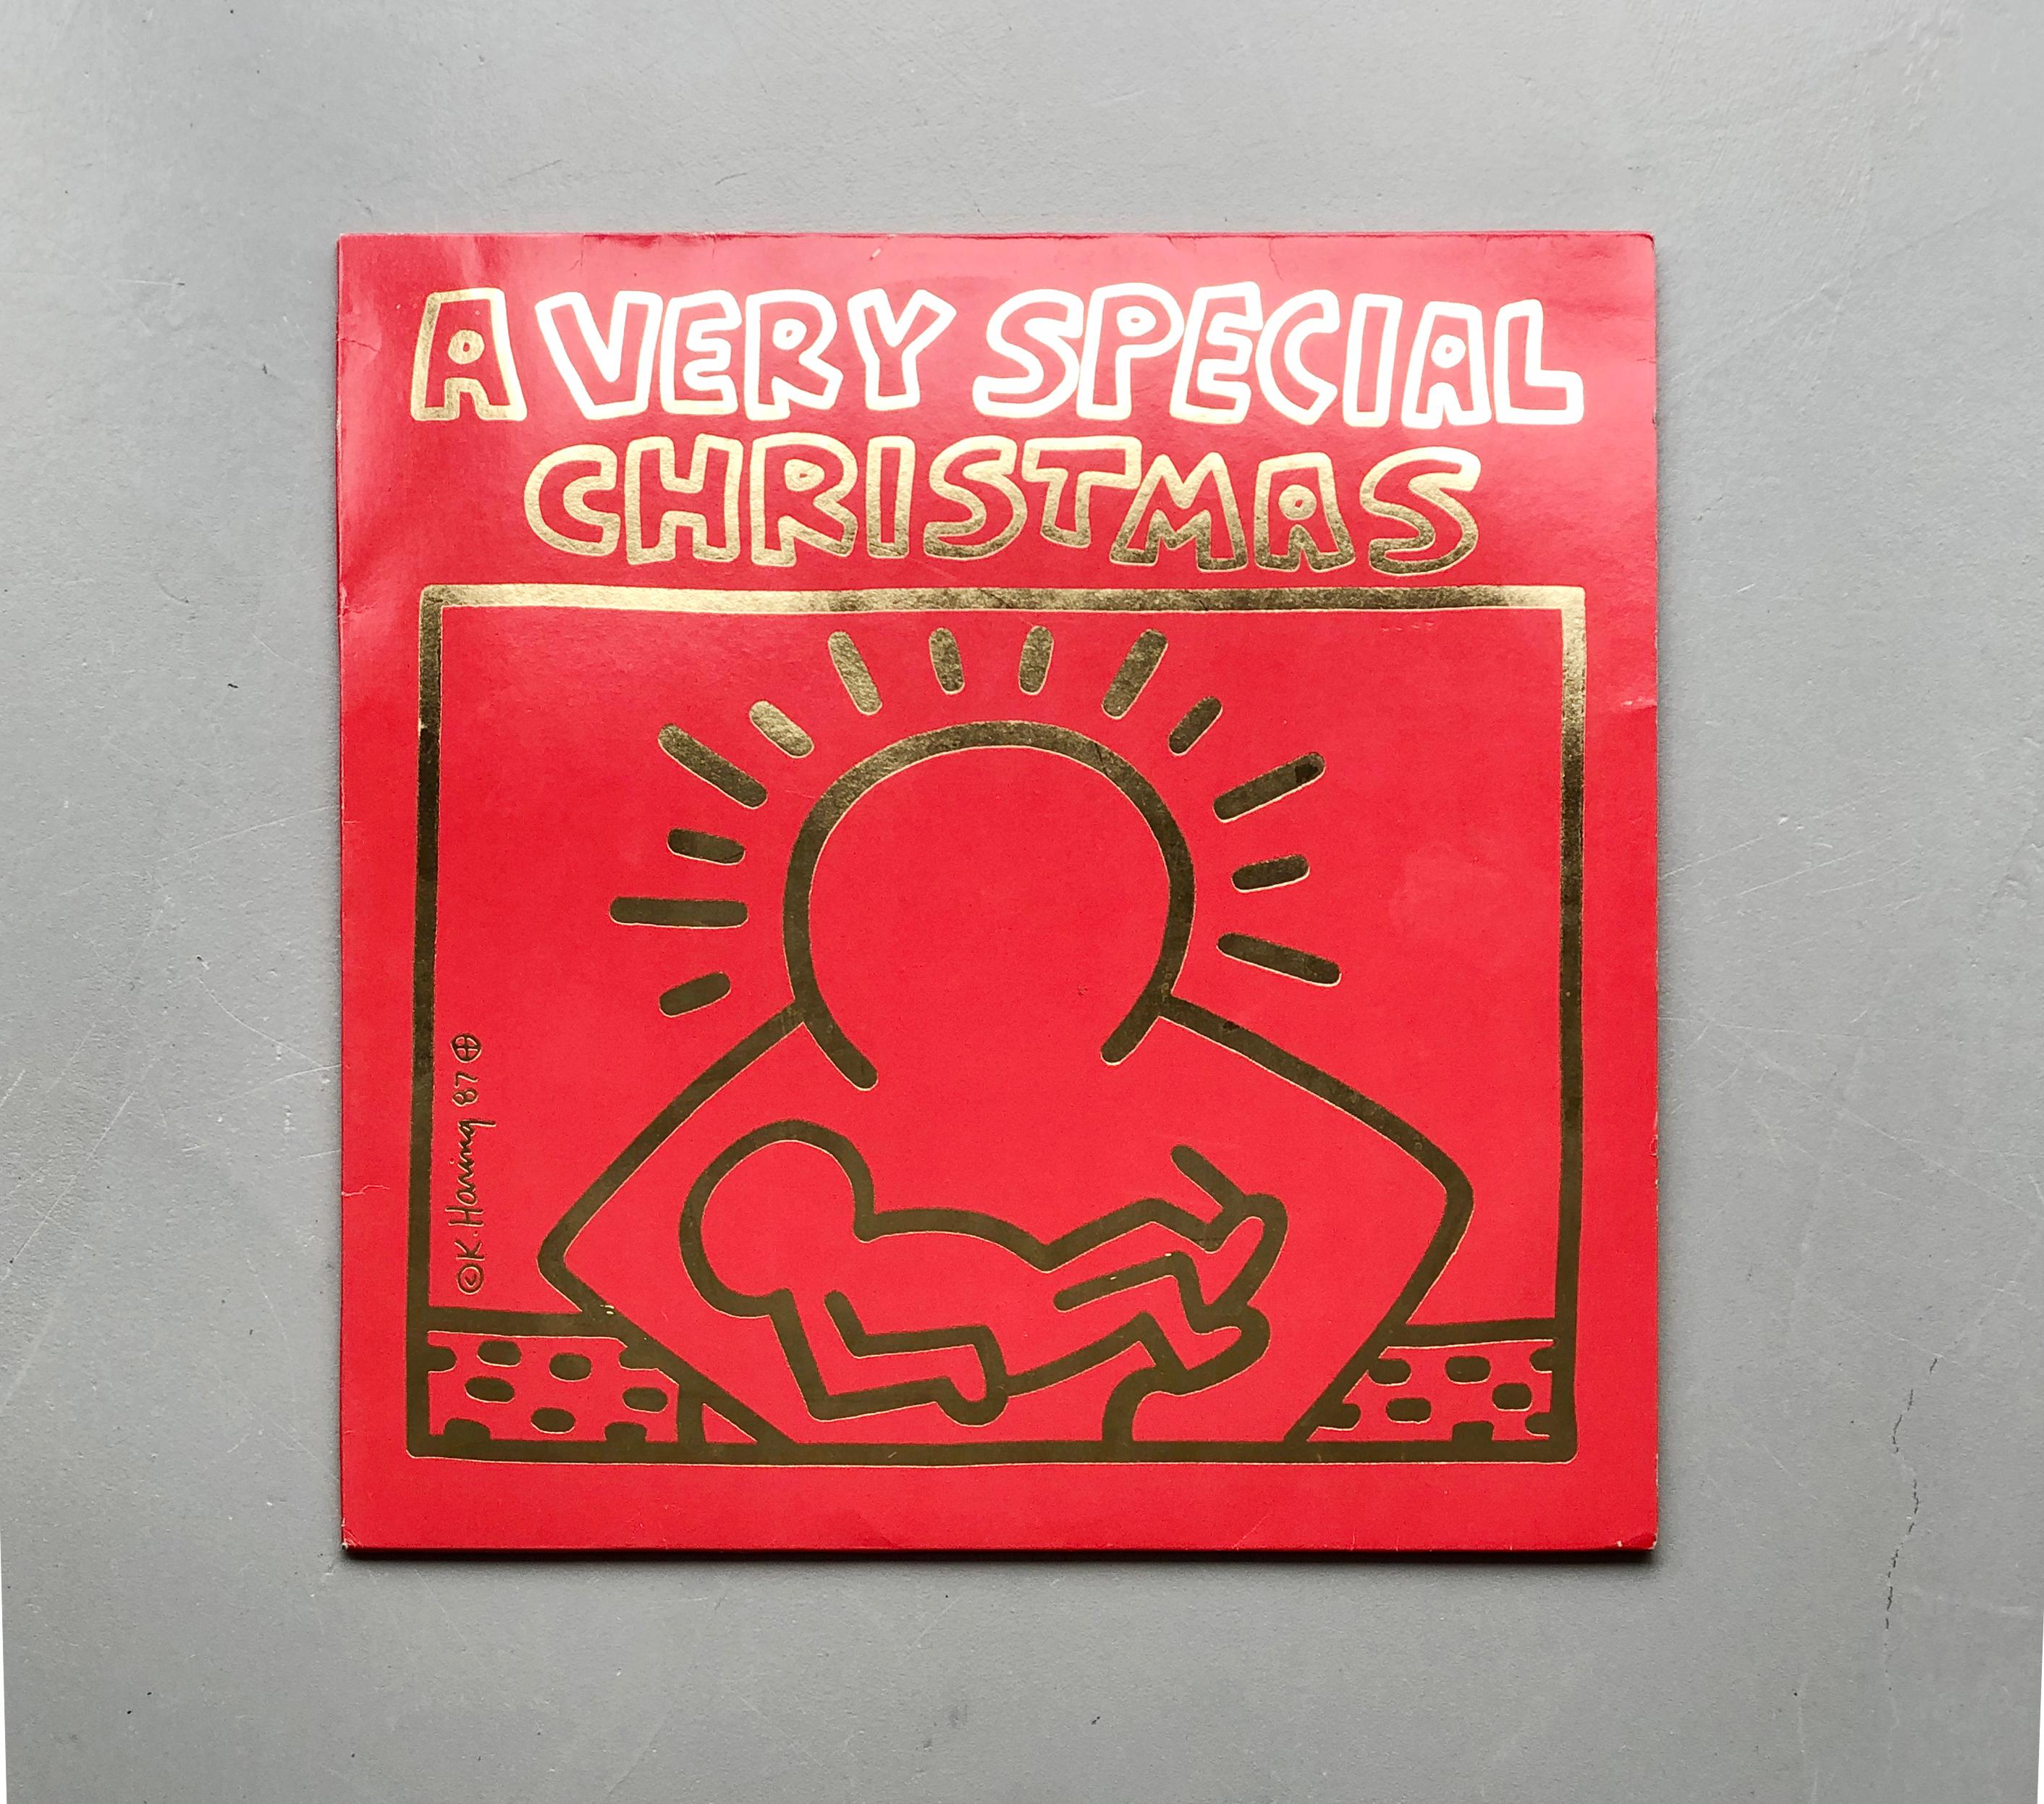 Ein ganz besonderes Weihnachten 
Verschiedene Künstler
1987 Erstpressung Vinyl-Schallplatte
A&M Records - SP-3911
Titelbild von Keith Haring

Diese Vinyl-Schallplatte mit Originalpressung aus dem Jahr 1987 zeigt das unverwechselbare Artwork von